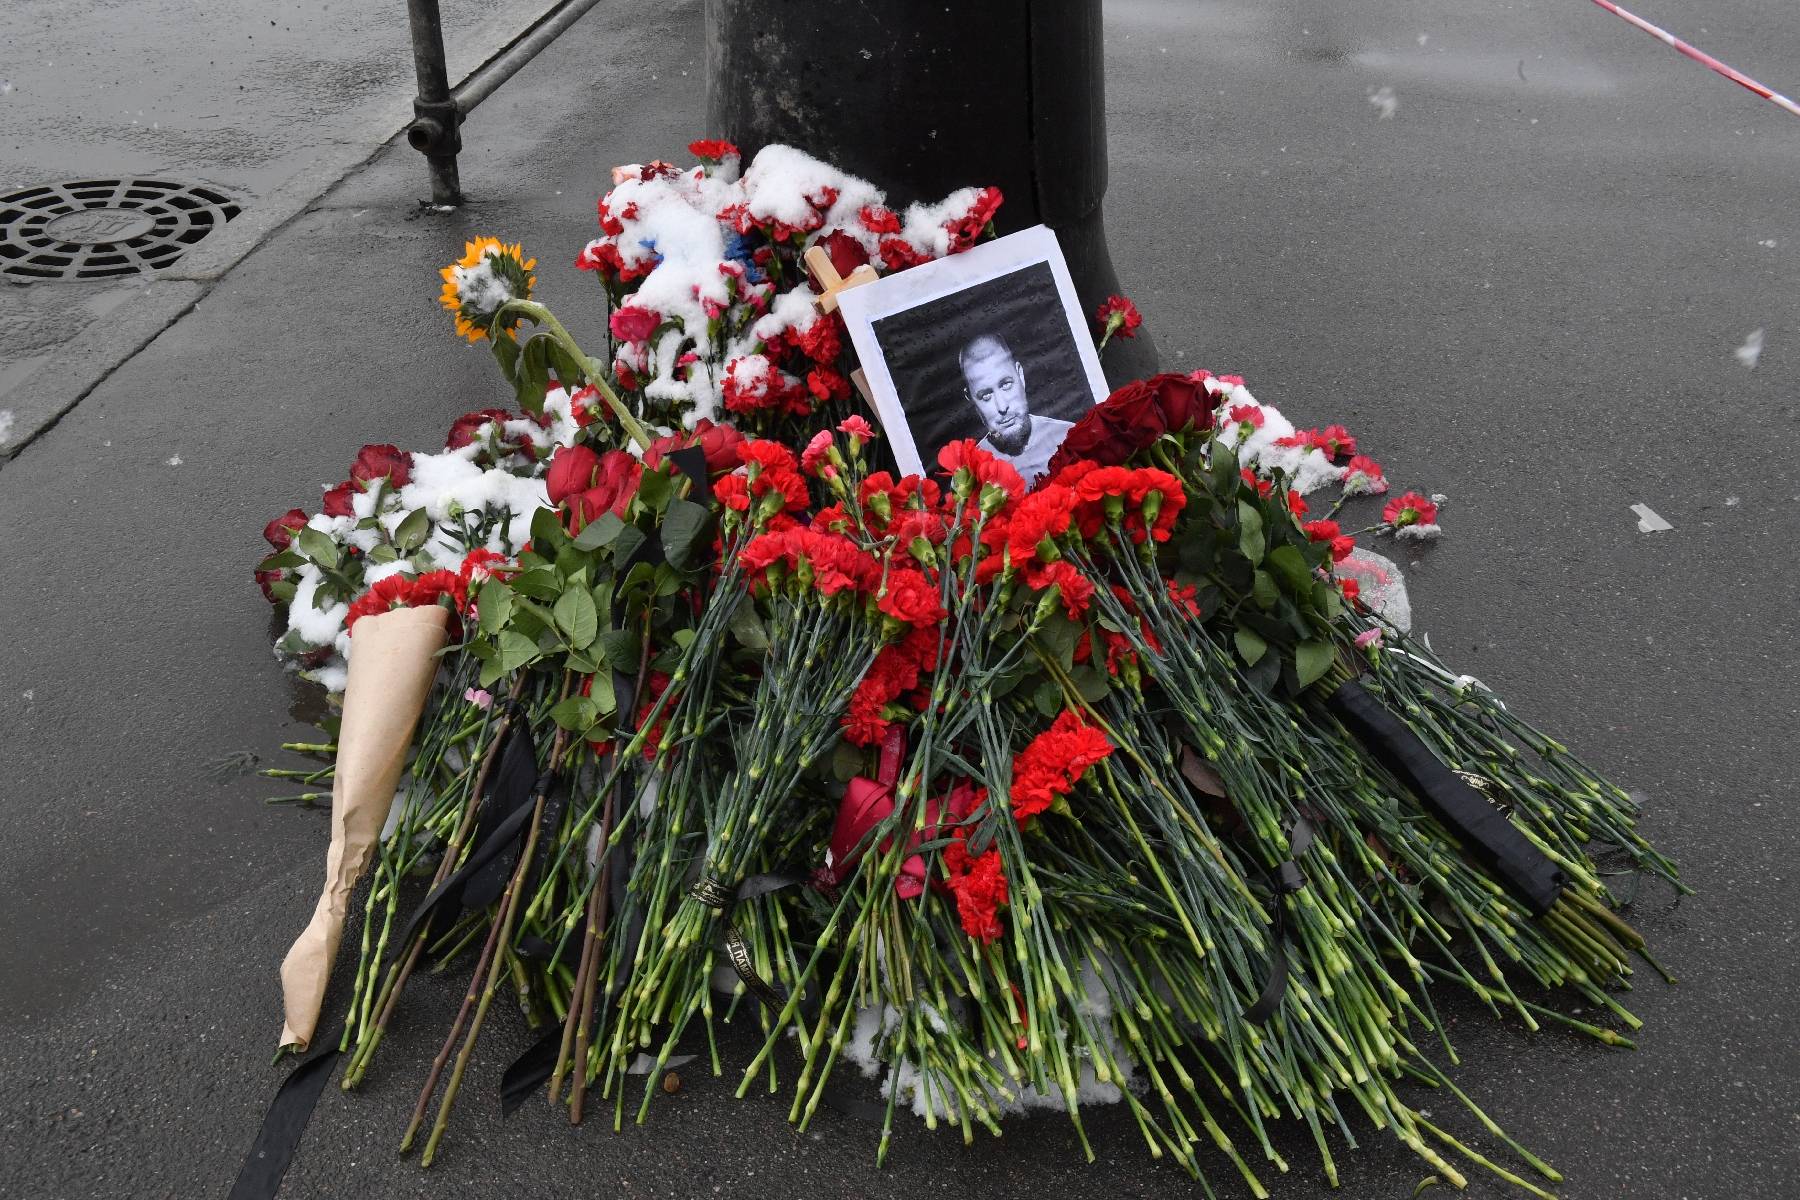 Russie: des centaines de personnes aux obsèques d'un blogueur militaire